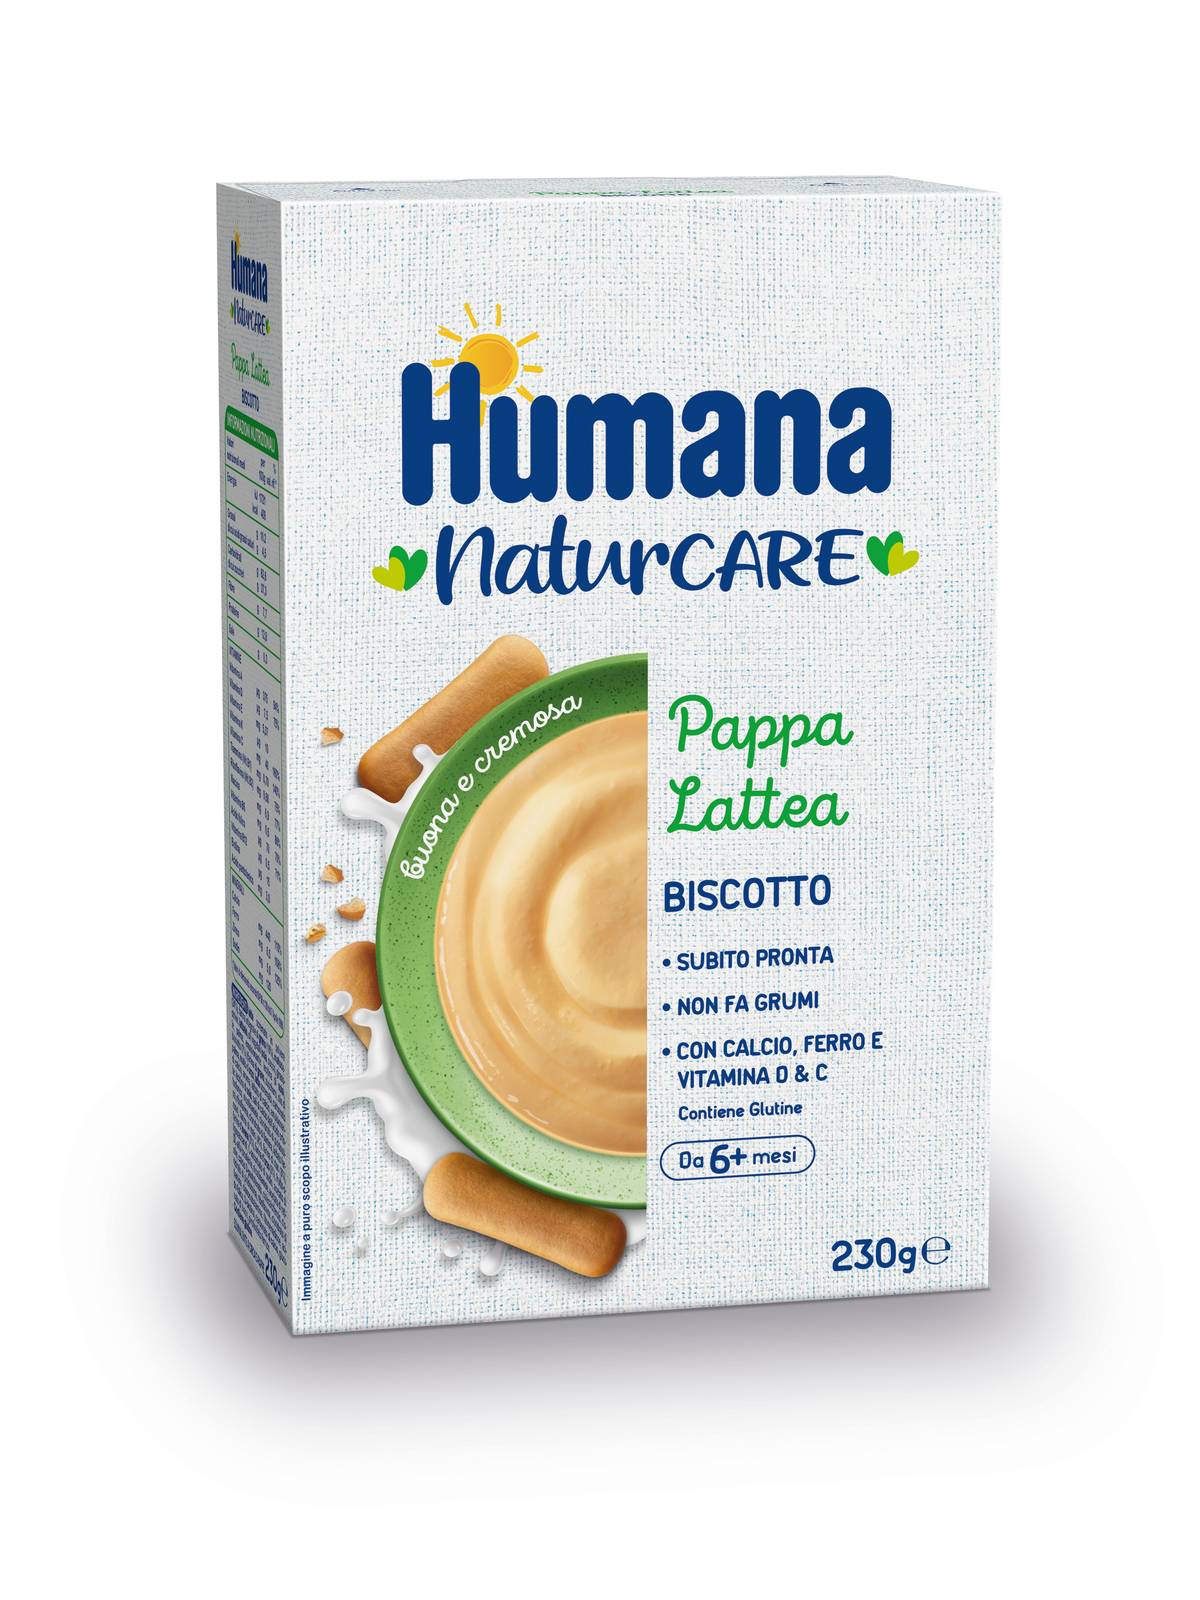 Humana pappa lattea al biscotto new 230 gr - Humana